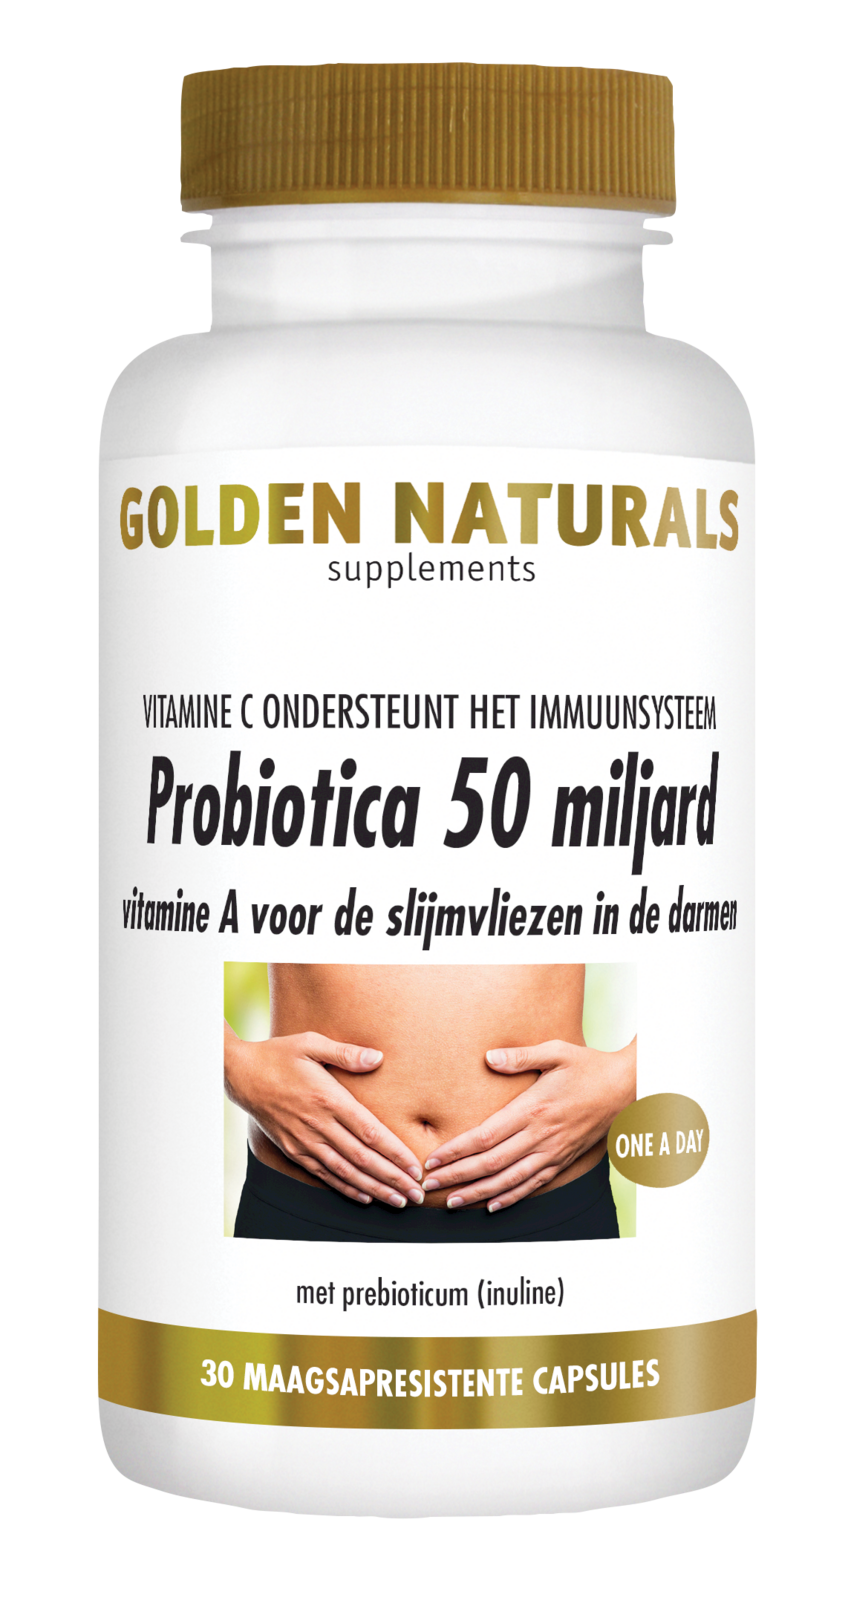 Golden Naturals Probiotica 50 Miljard Capsules kopen